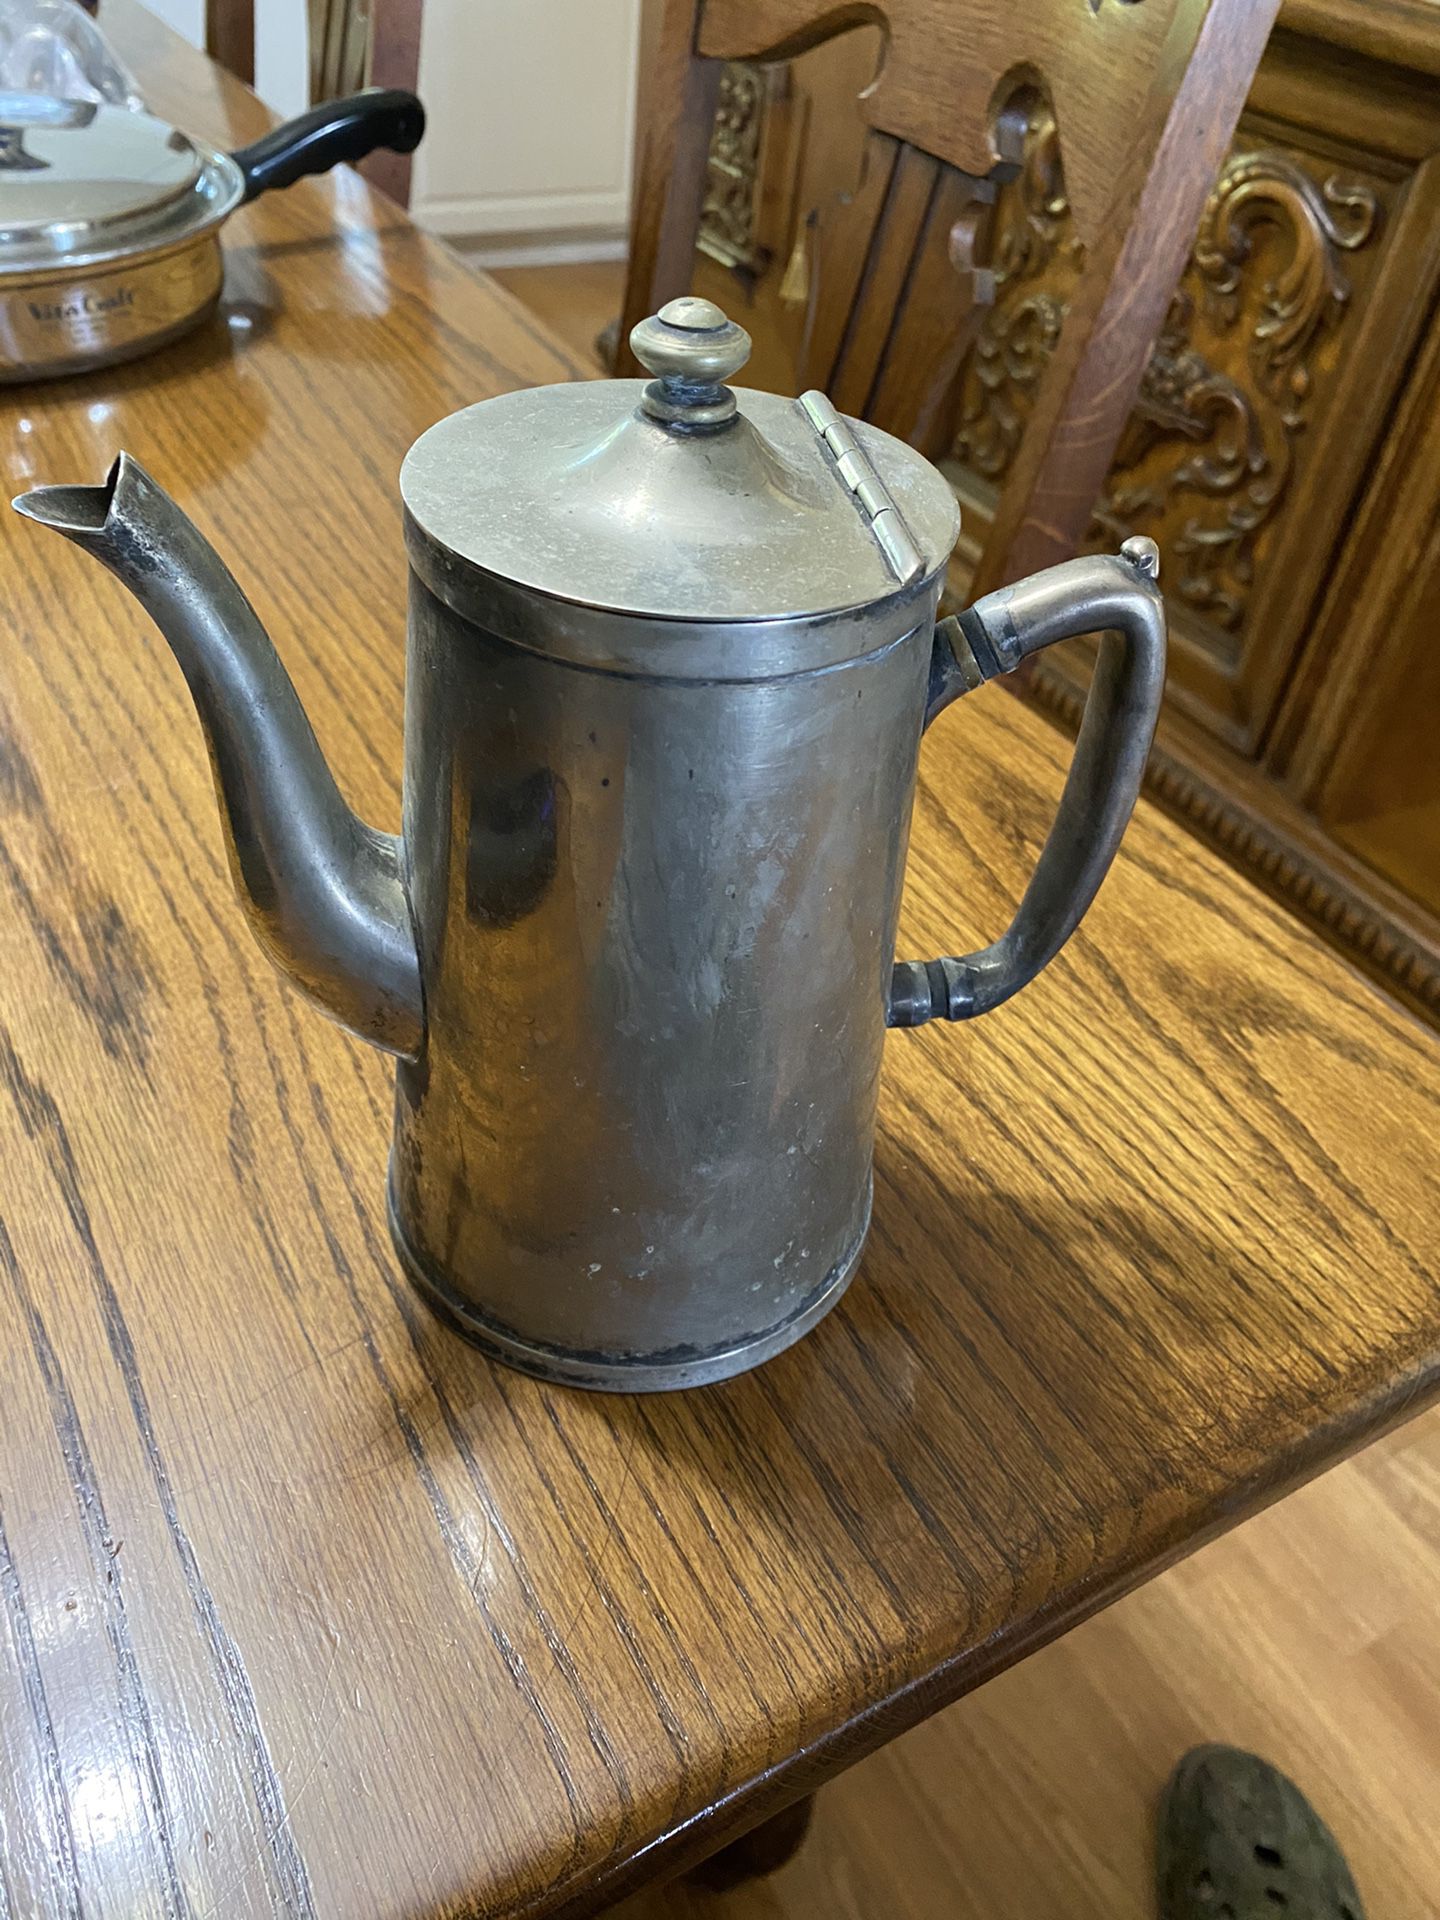 Grand Silver Company Wear Brite Nickle Silver Cofee/Tea Pot